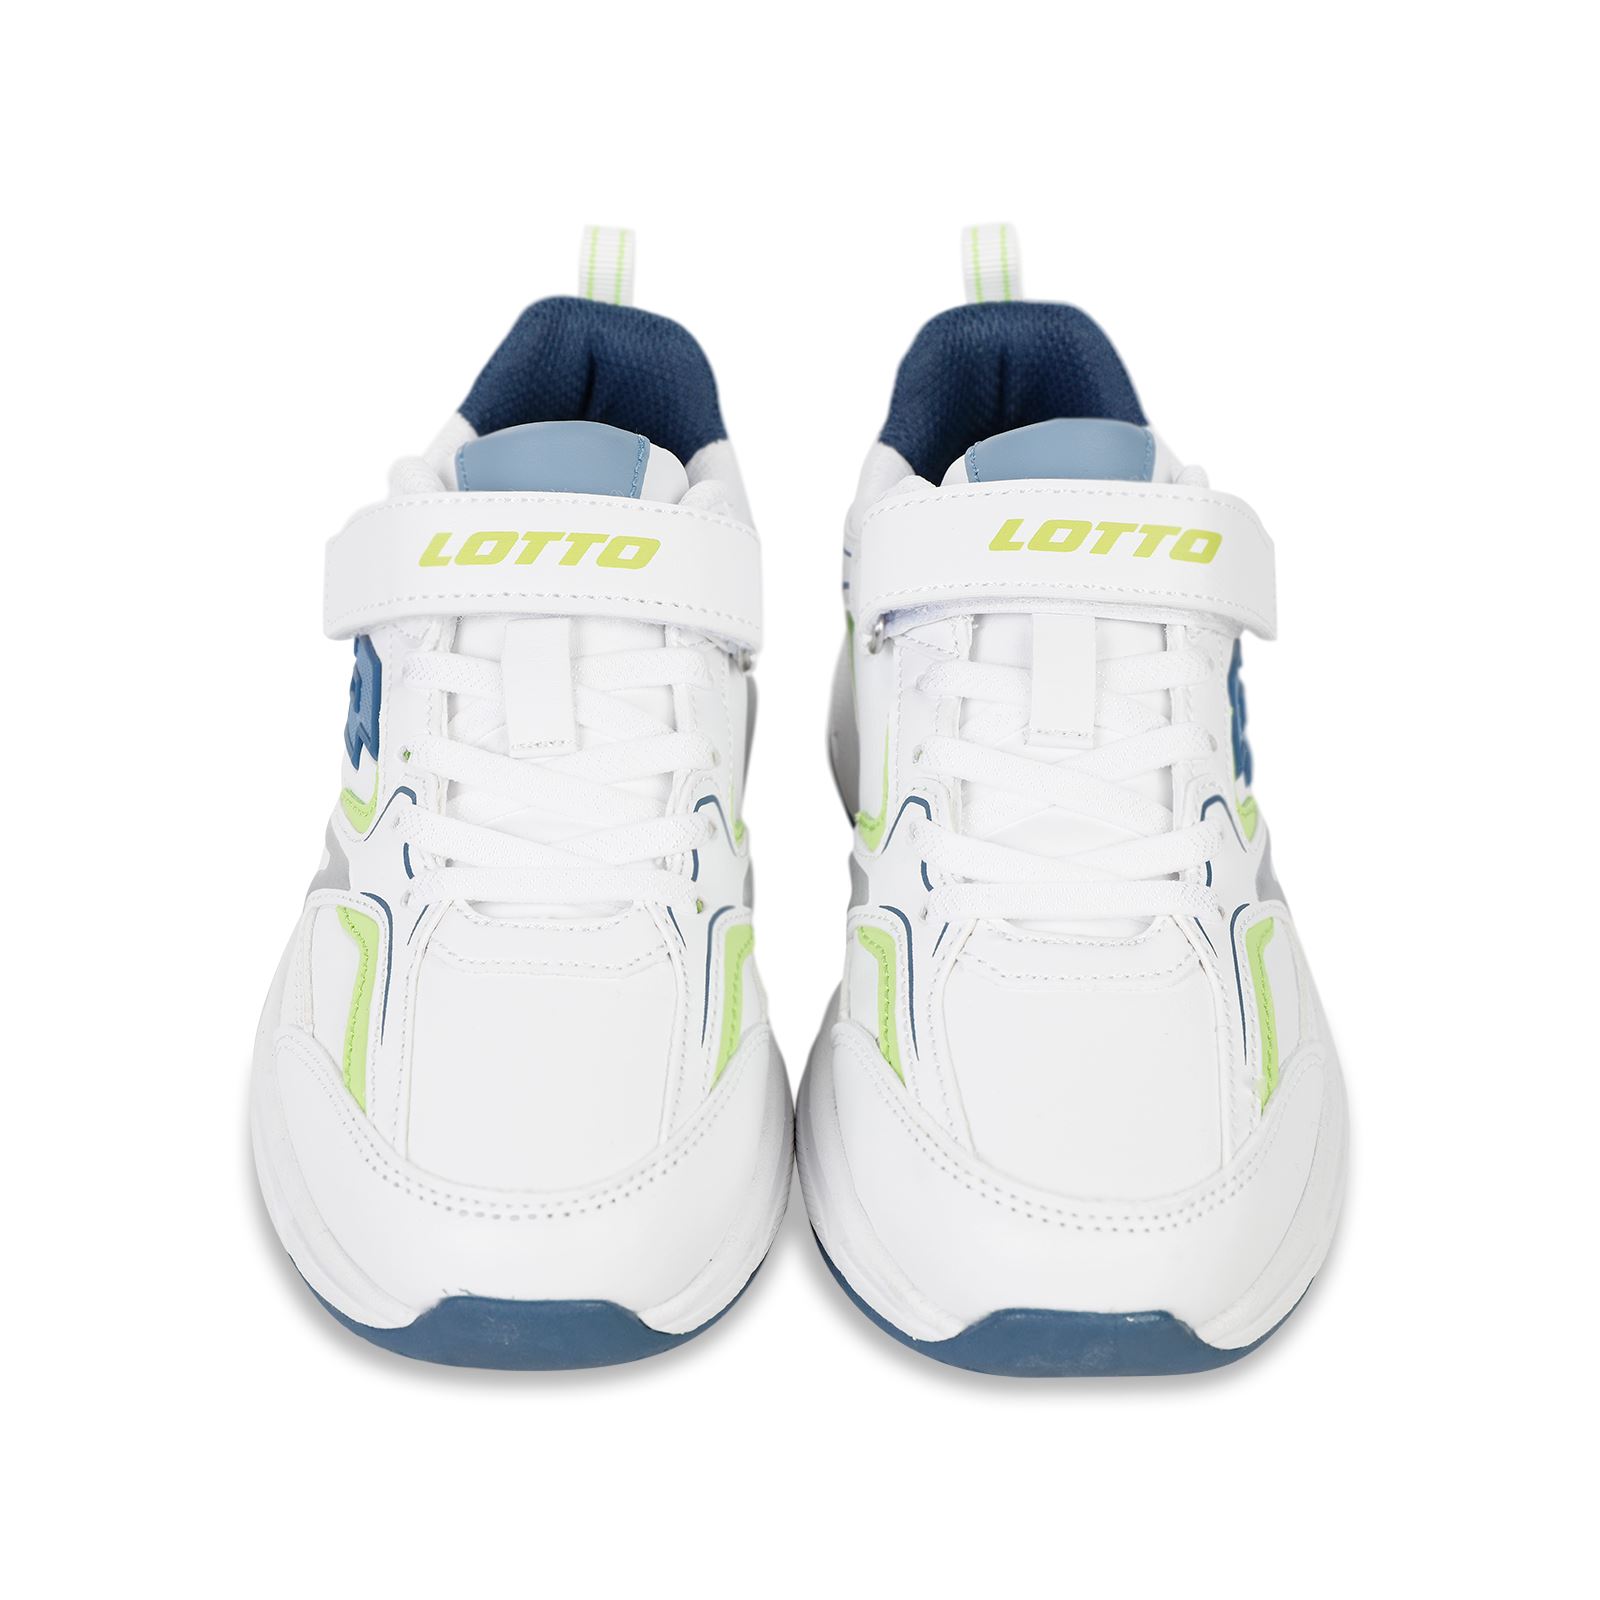 Lotto Life's Erkek Çocuk Spor Ayakkabı 31-35 Numara Beyaz